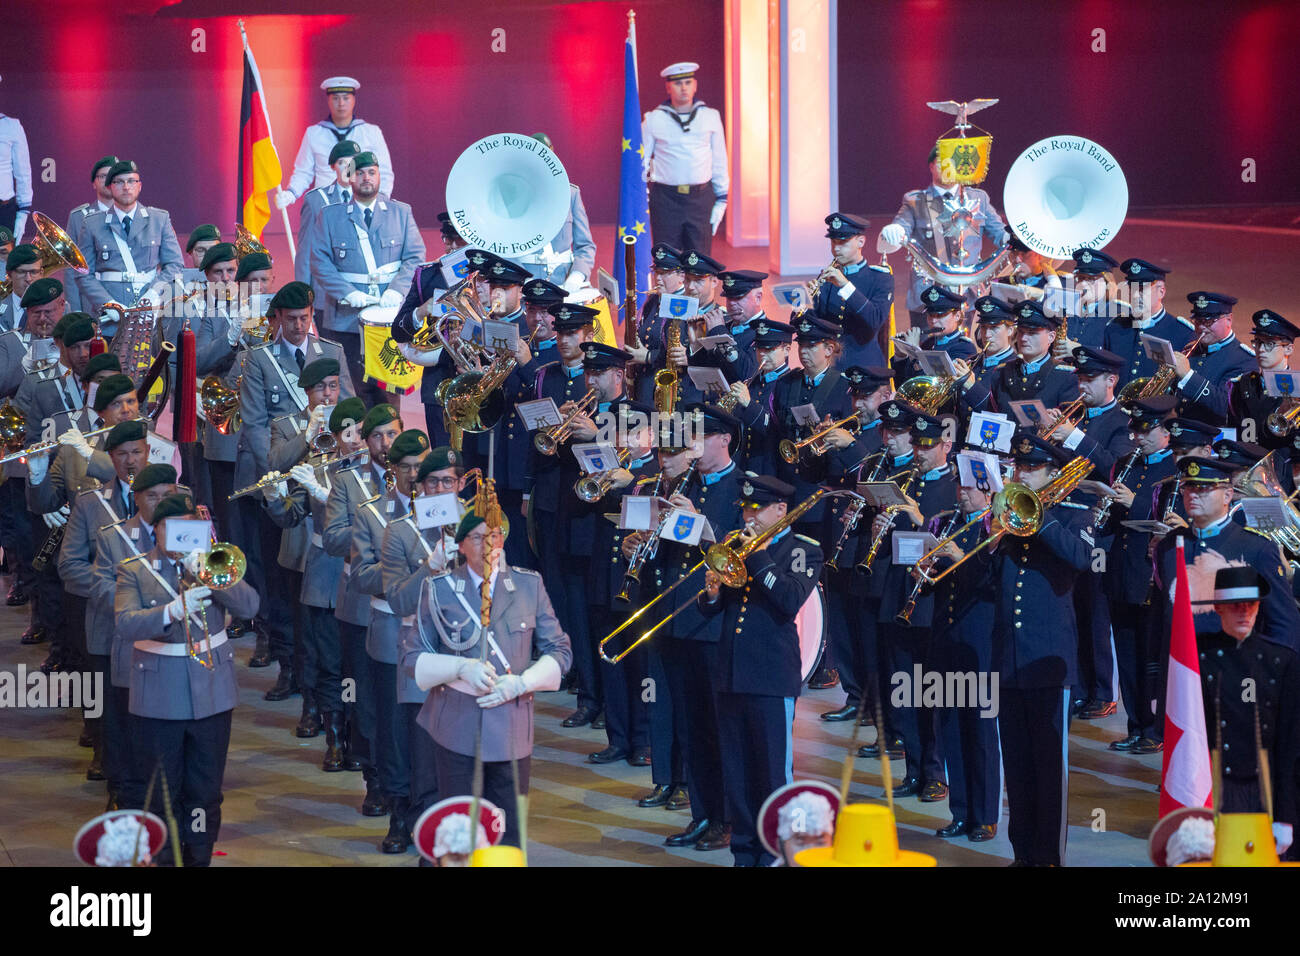 Finale und Abschlussaufstellung des Musikfestes der Bundeswehr, Internationales Militär Tattoo im ISS Dome. Düsseldorf, 21.09.2019 Stock Photo